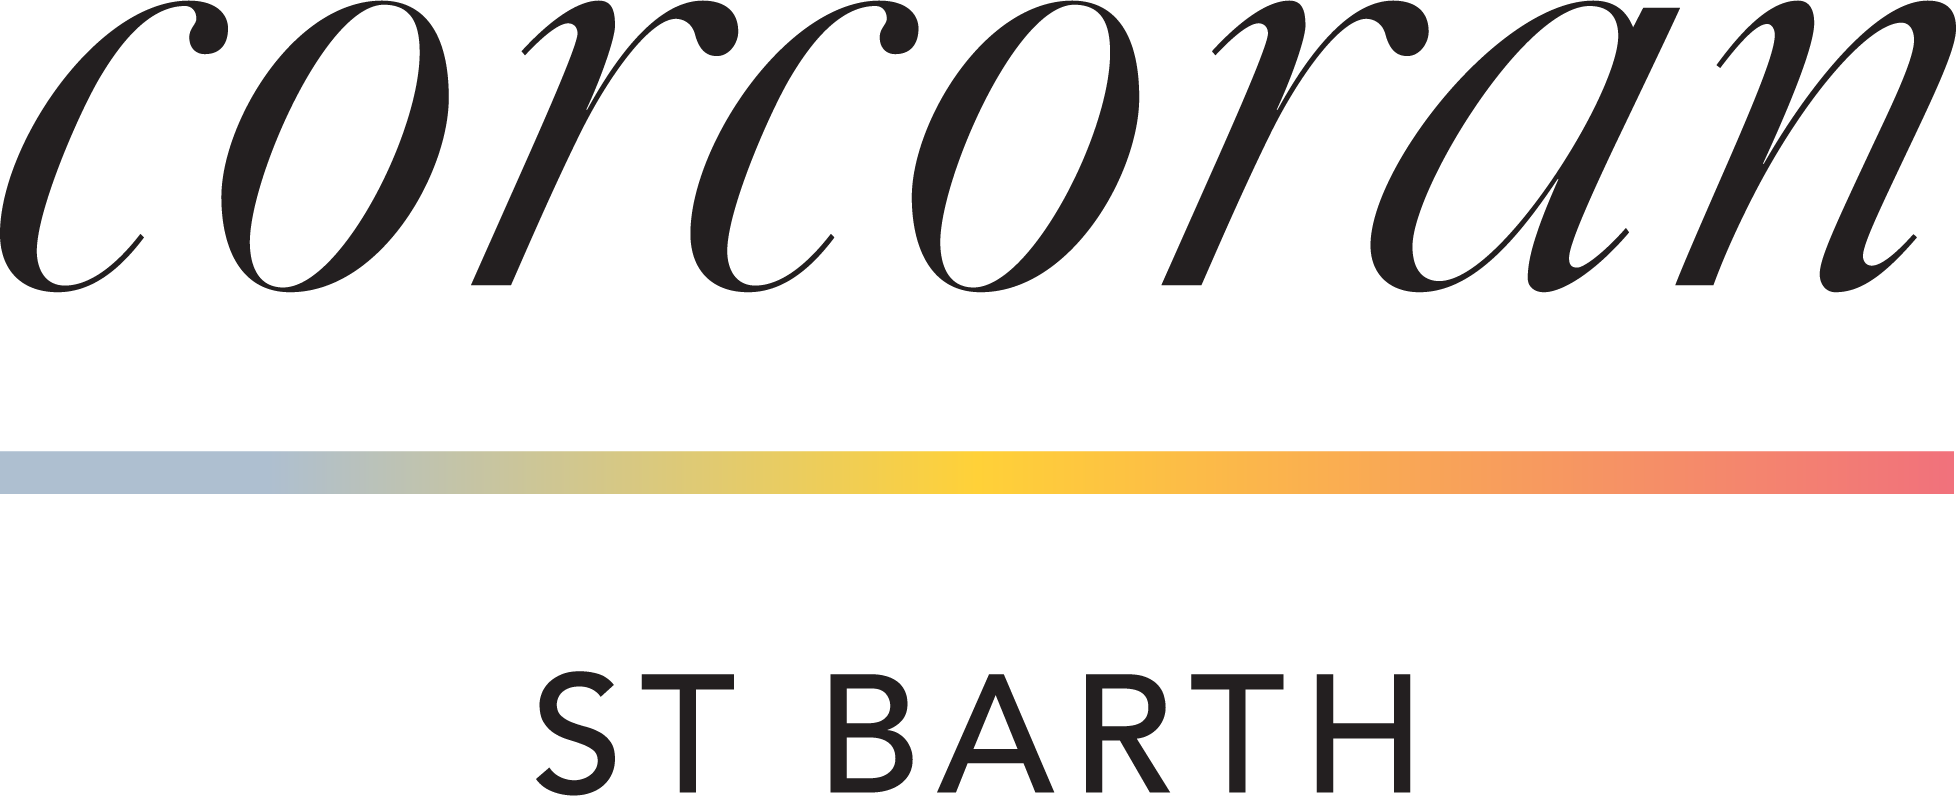 Corcoran St Barth logo